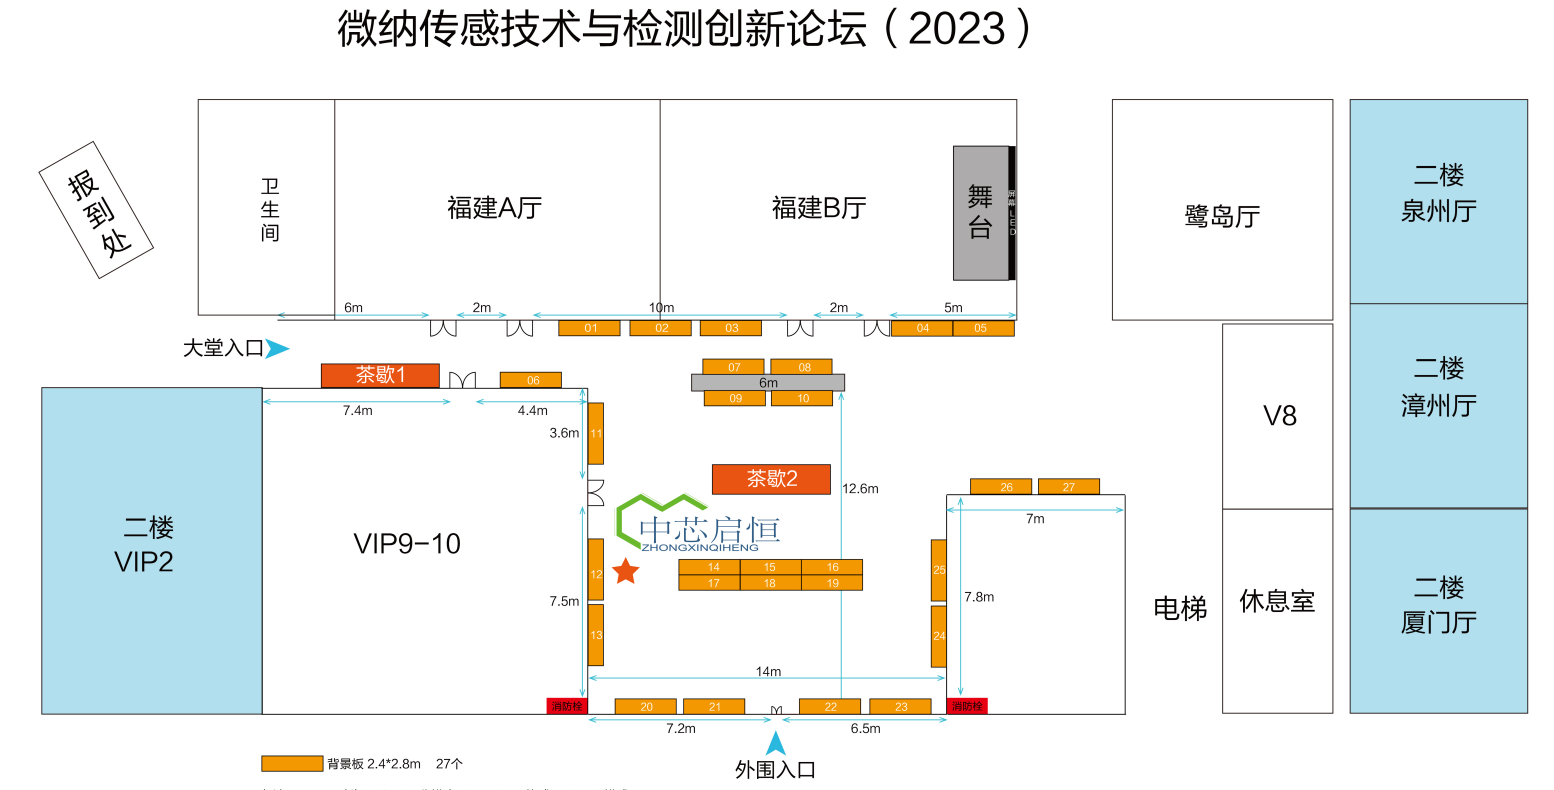 中国微米纳米技术学会微纳传感技术与检测创新论坛（2023)-中芯启恒展位号12号V3.png